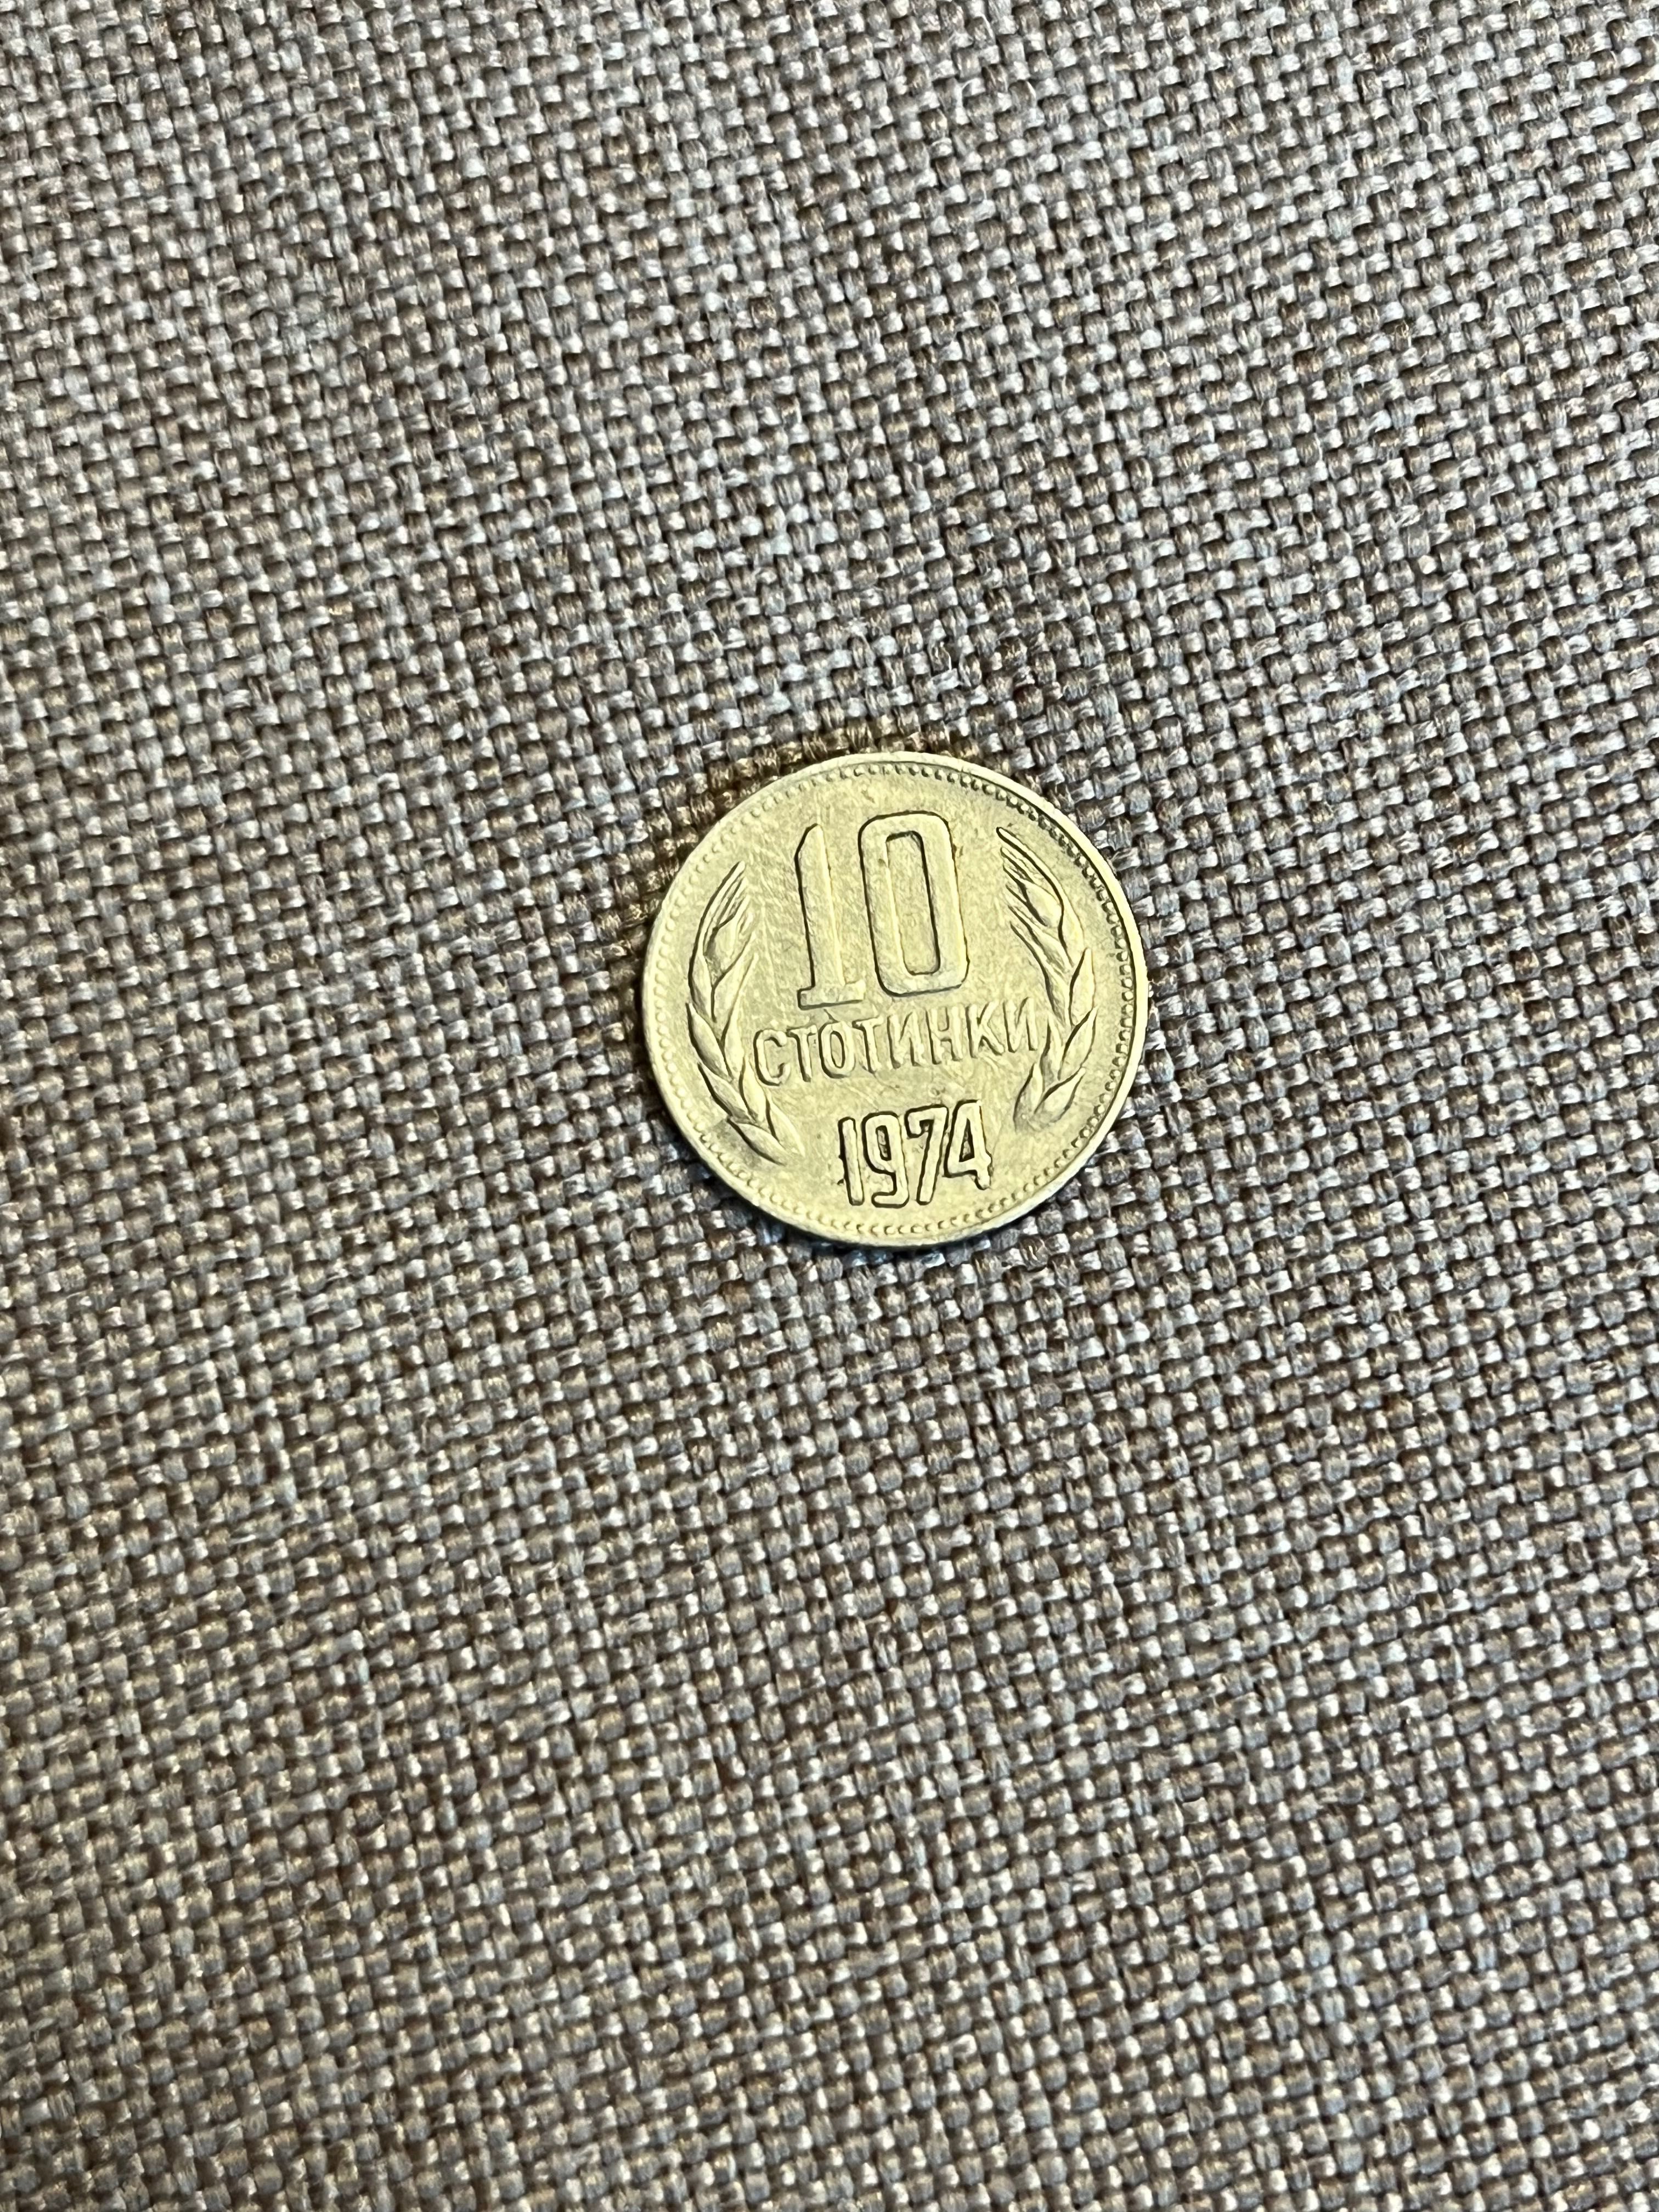 Стара монета 10 ст. от 1974 година